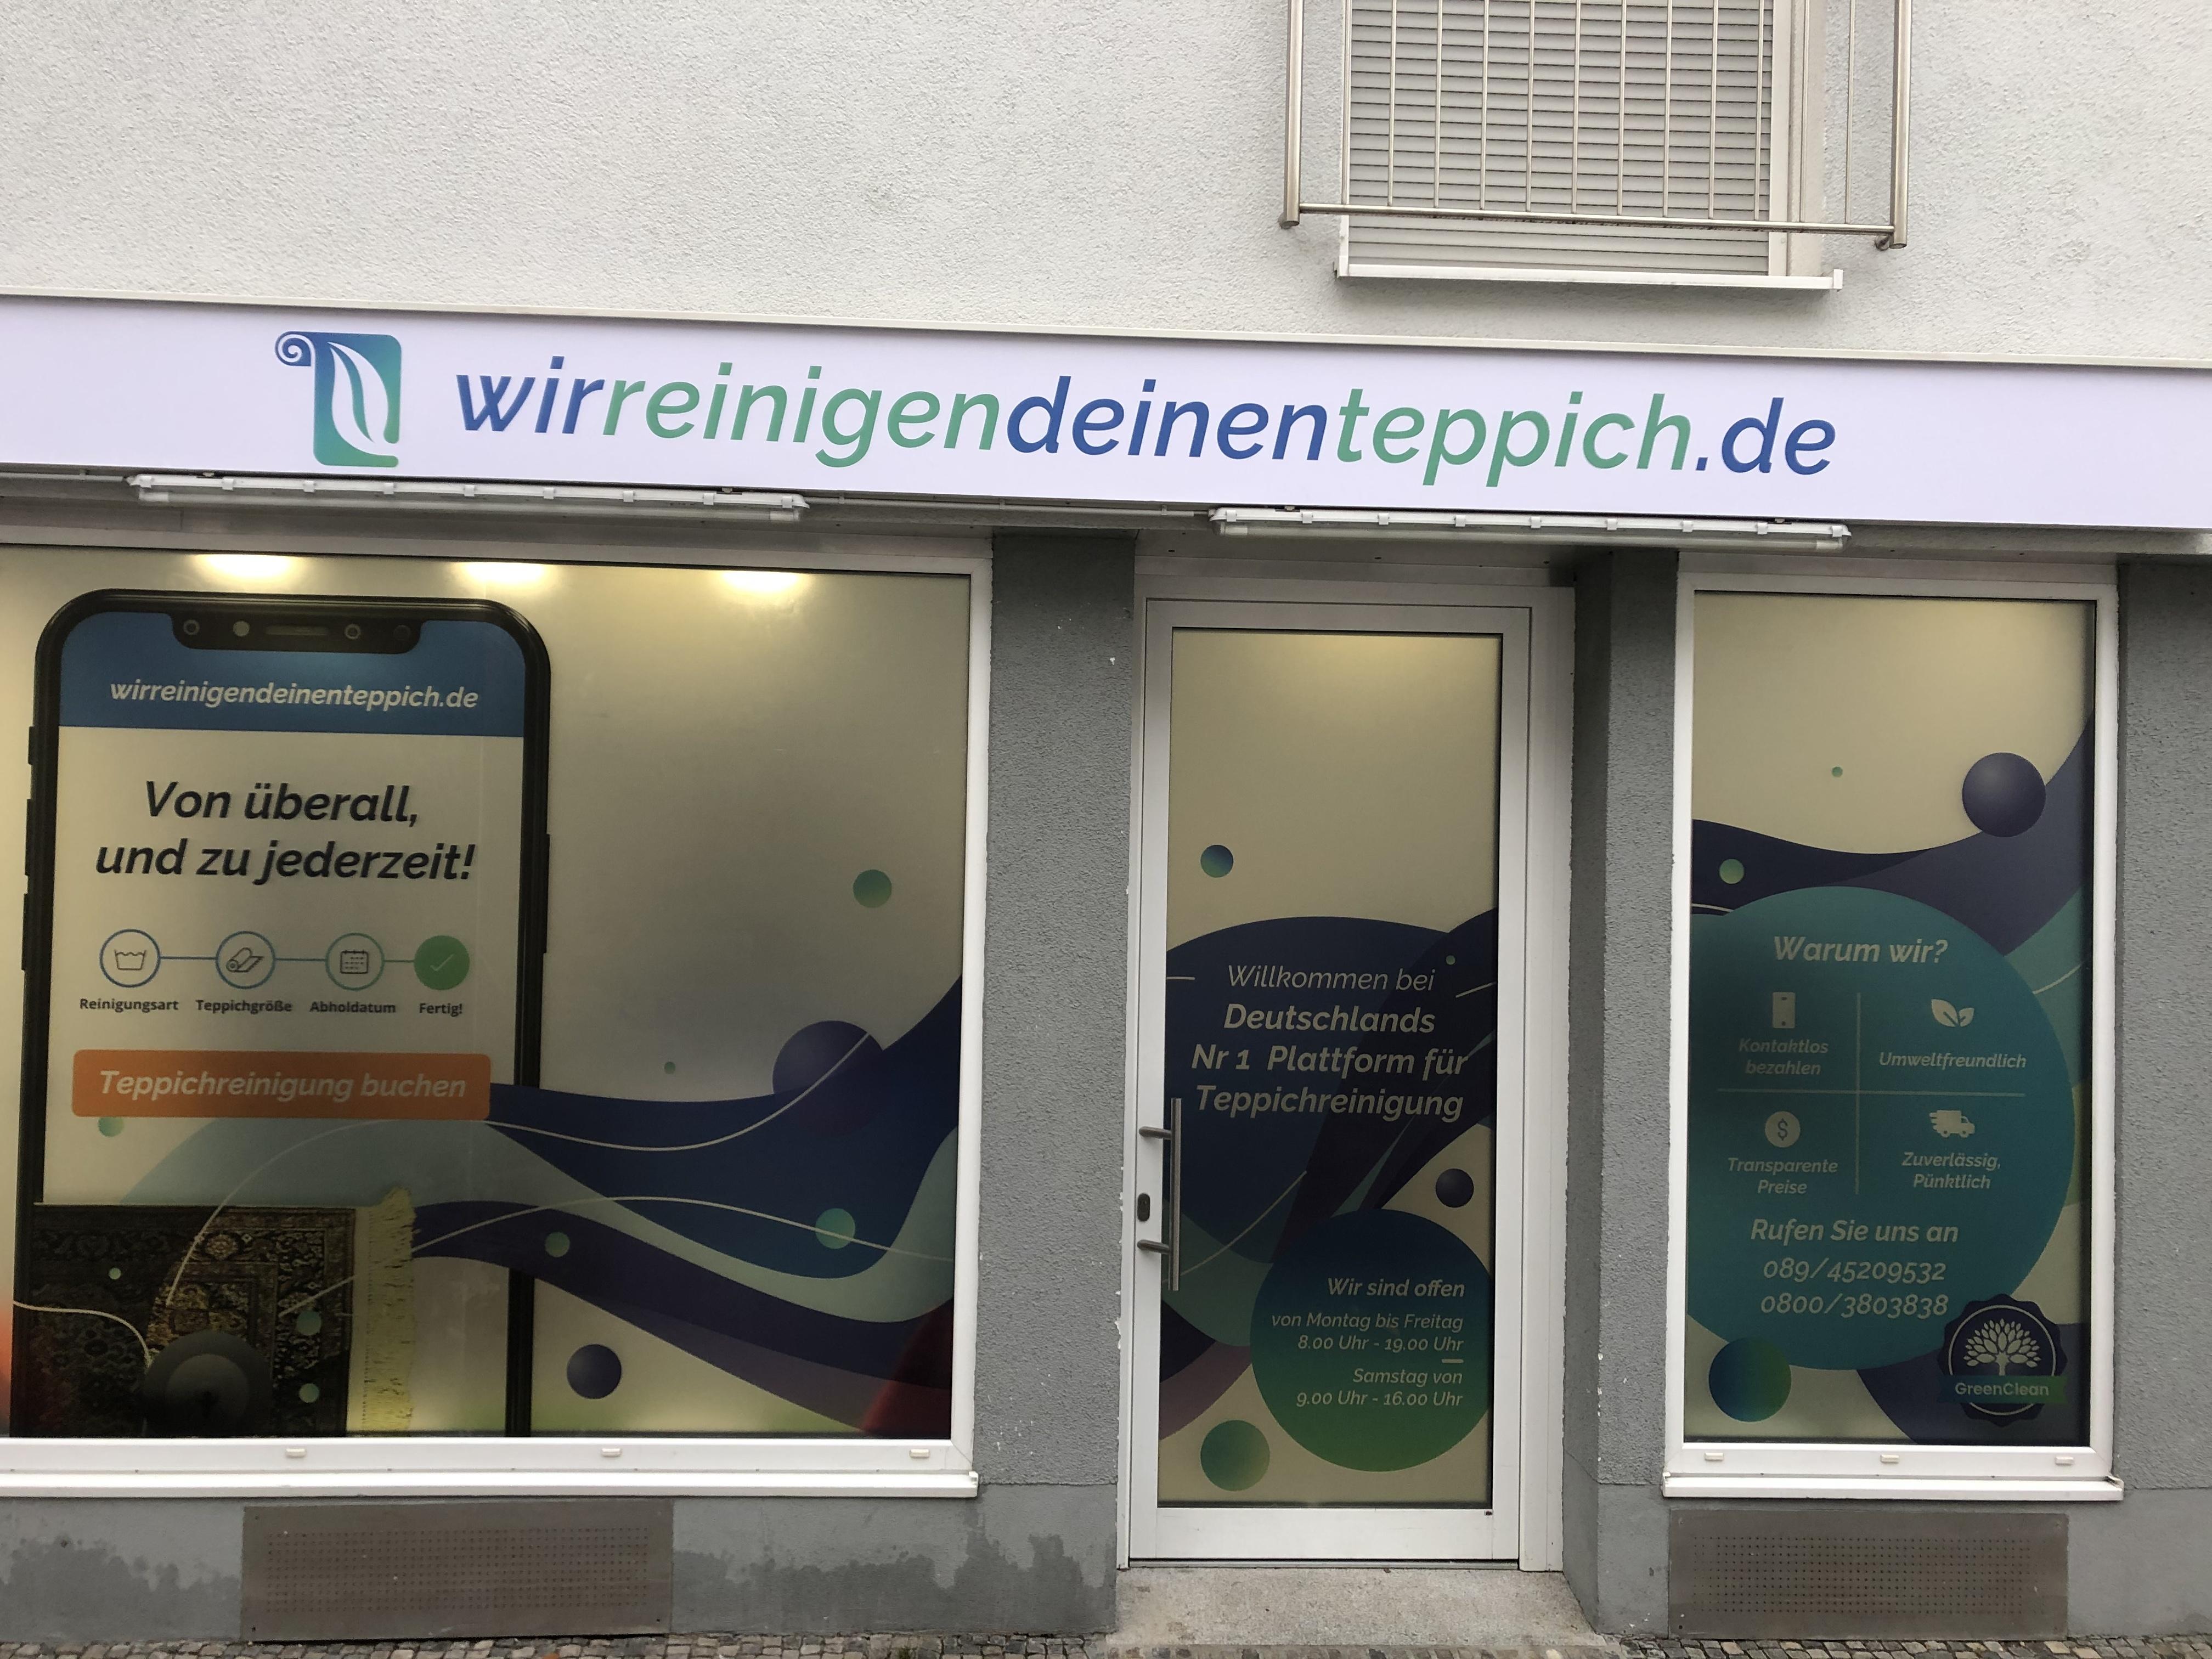 Wir reinigen deinen Teppich.de / startup from München / Background